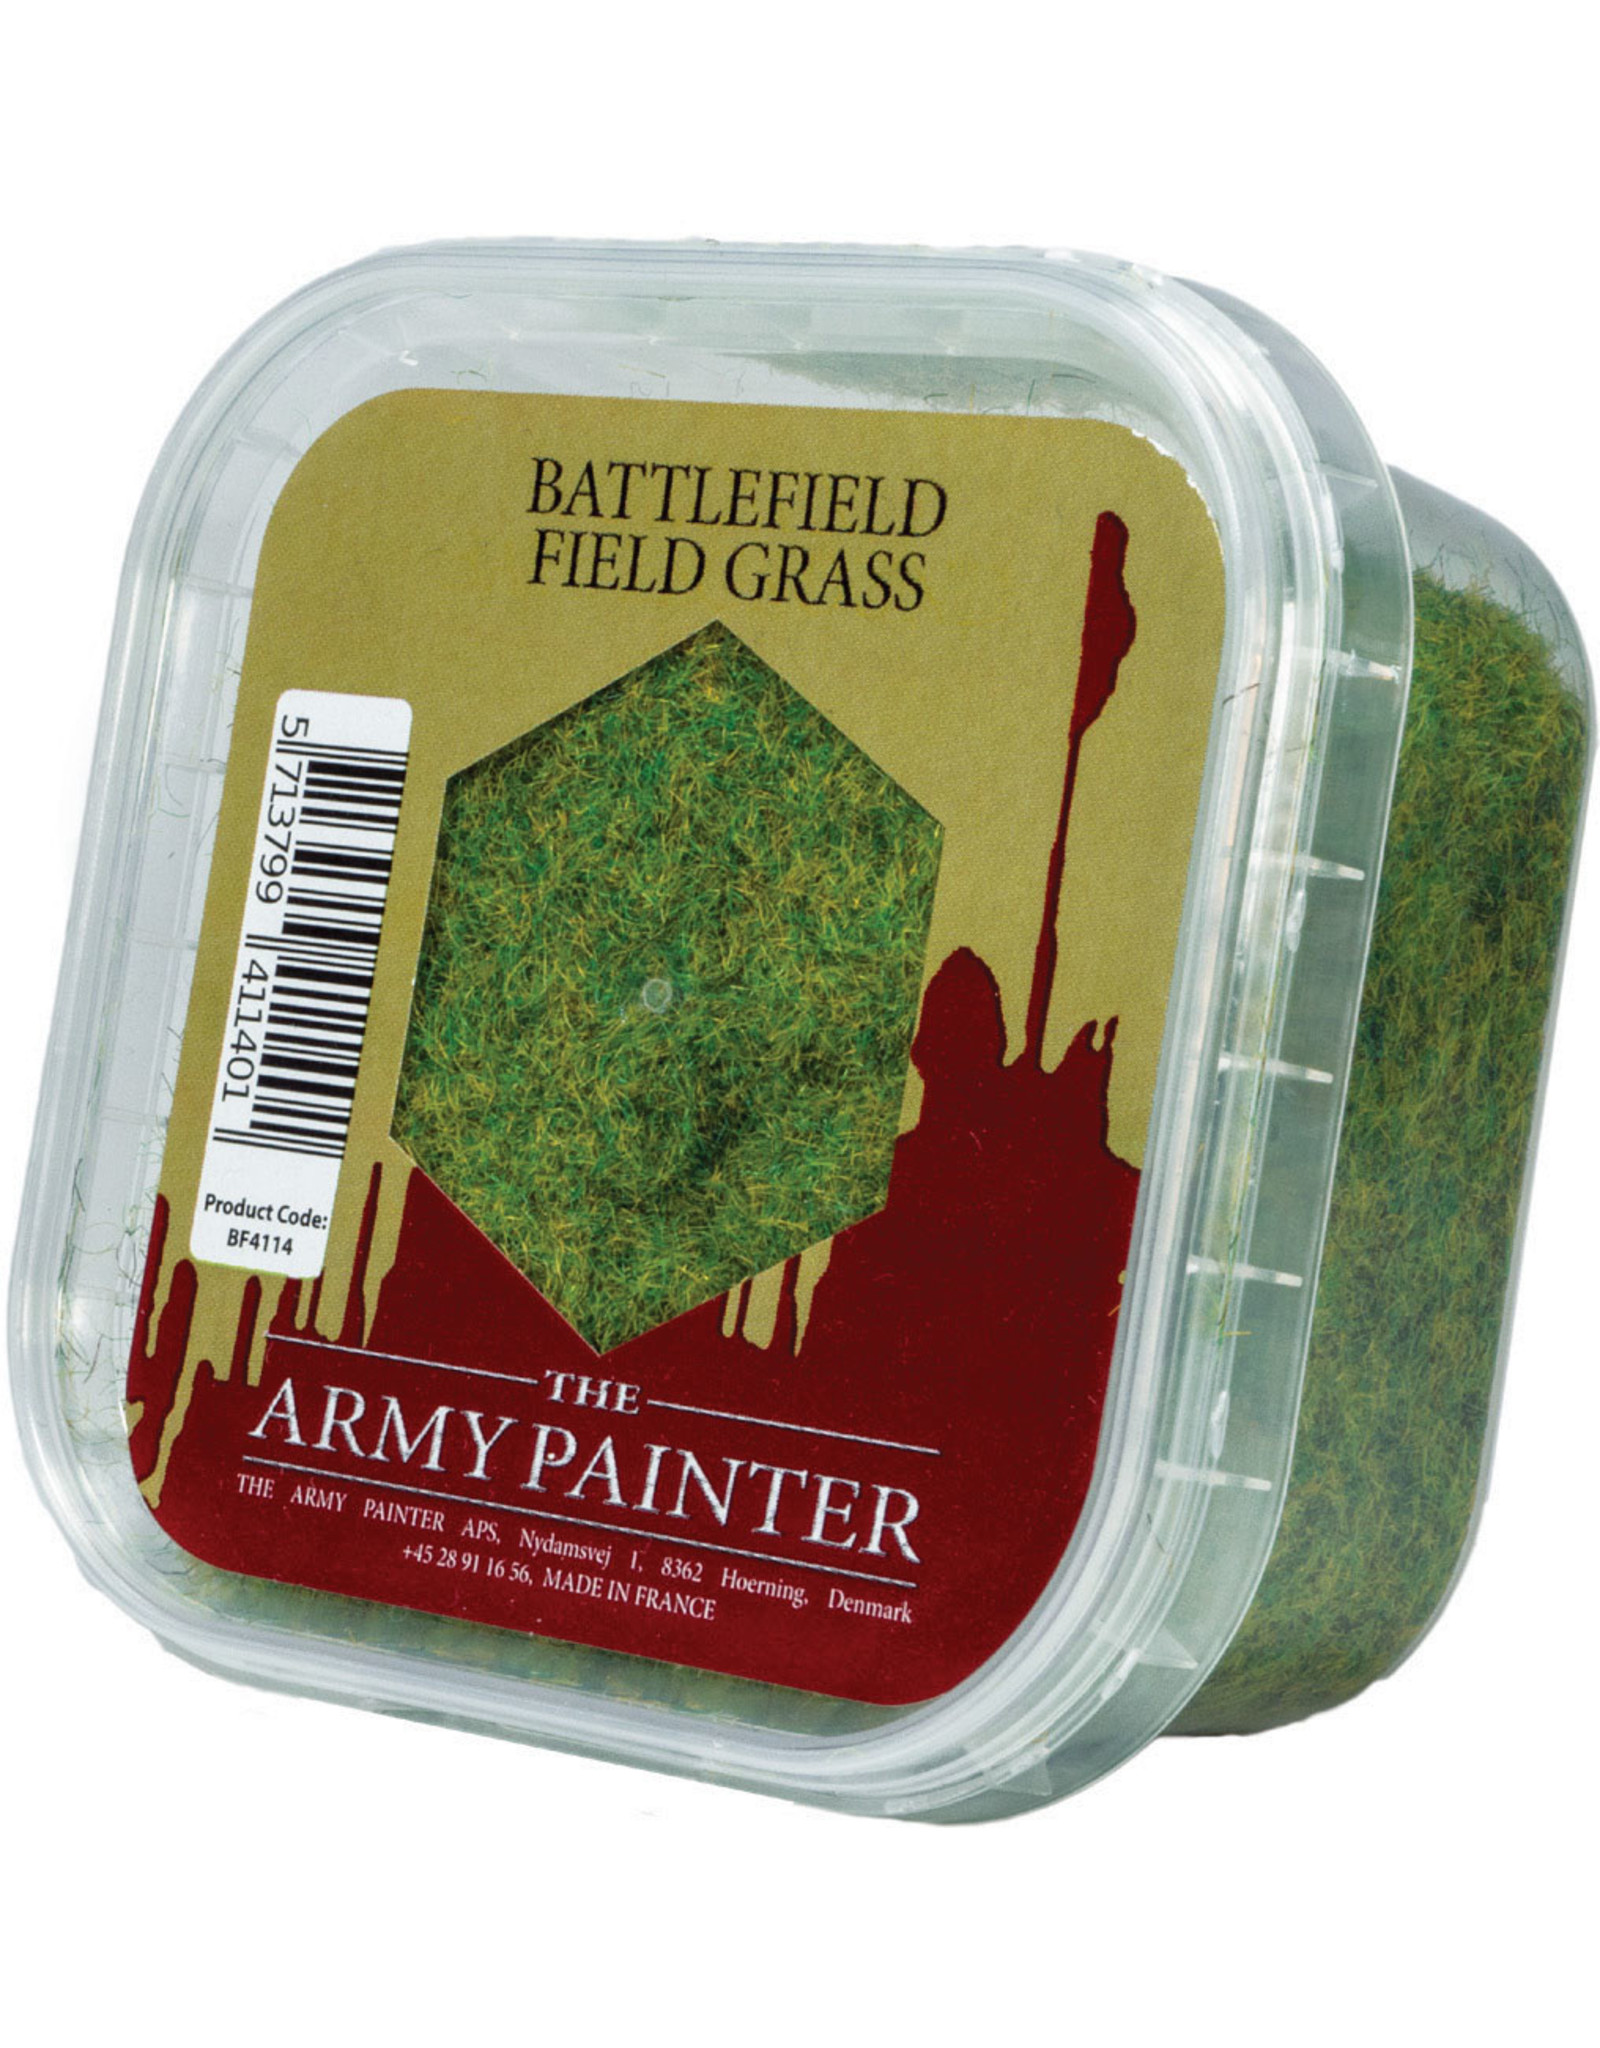 Army Painter Battlefields: Battlefield Field Grass